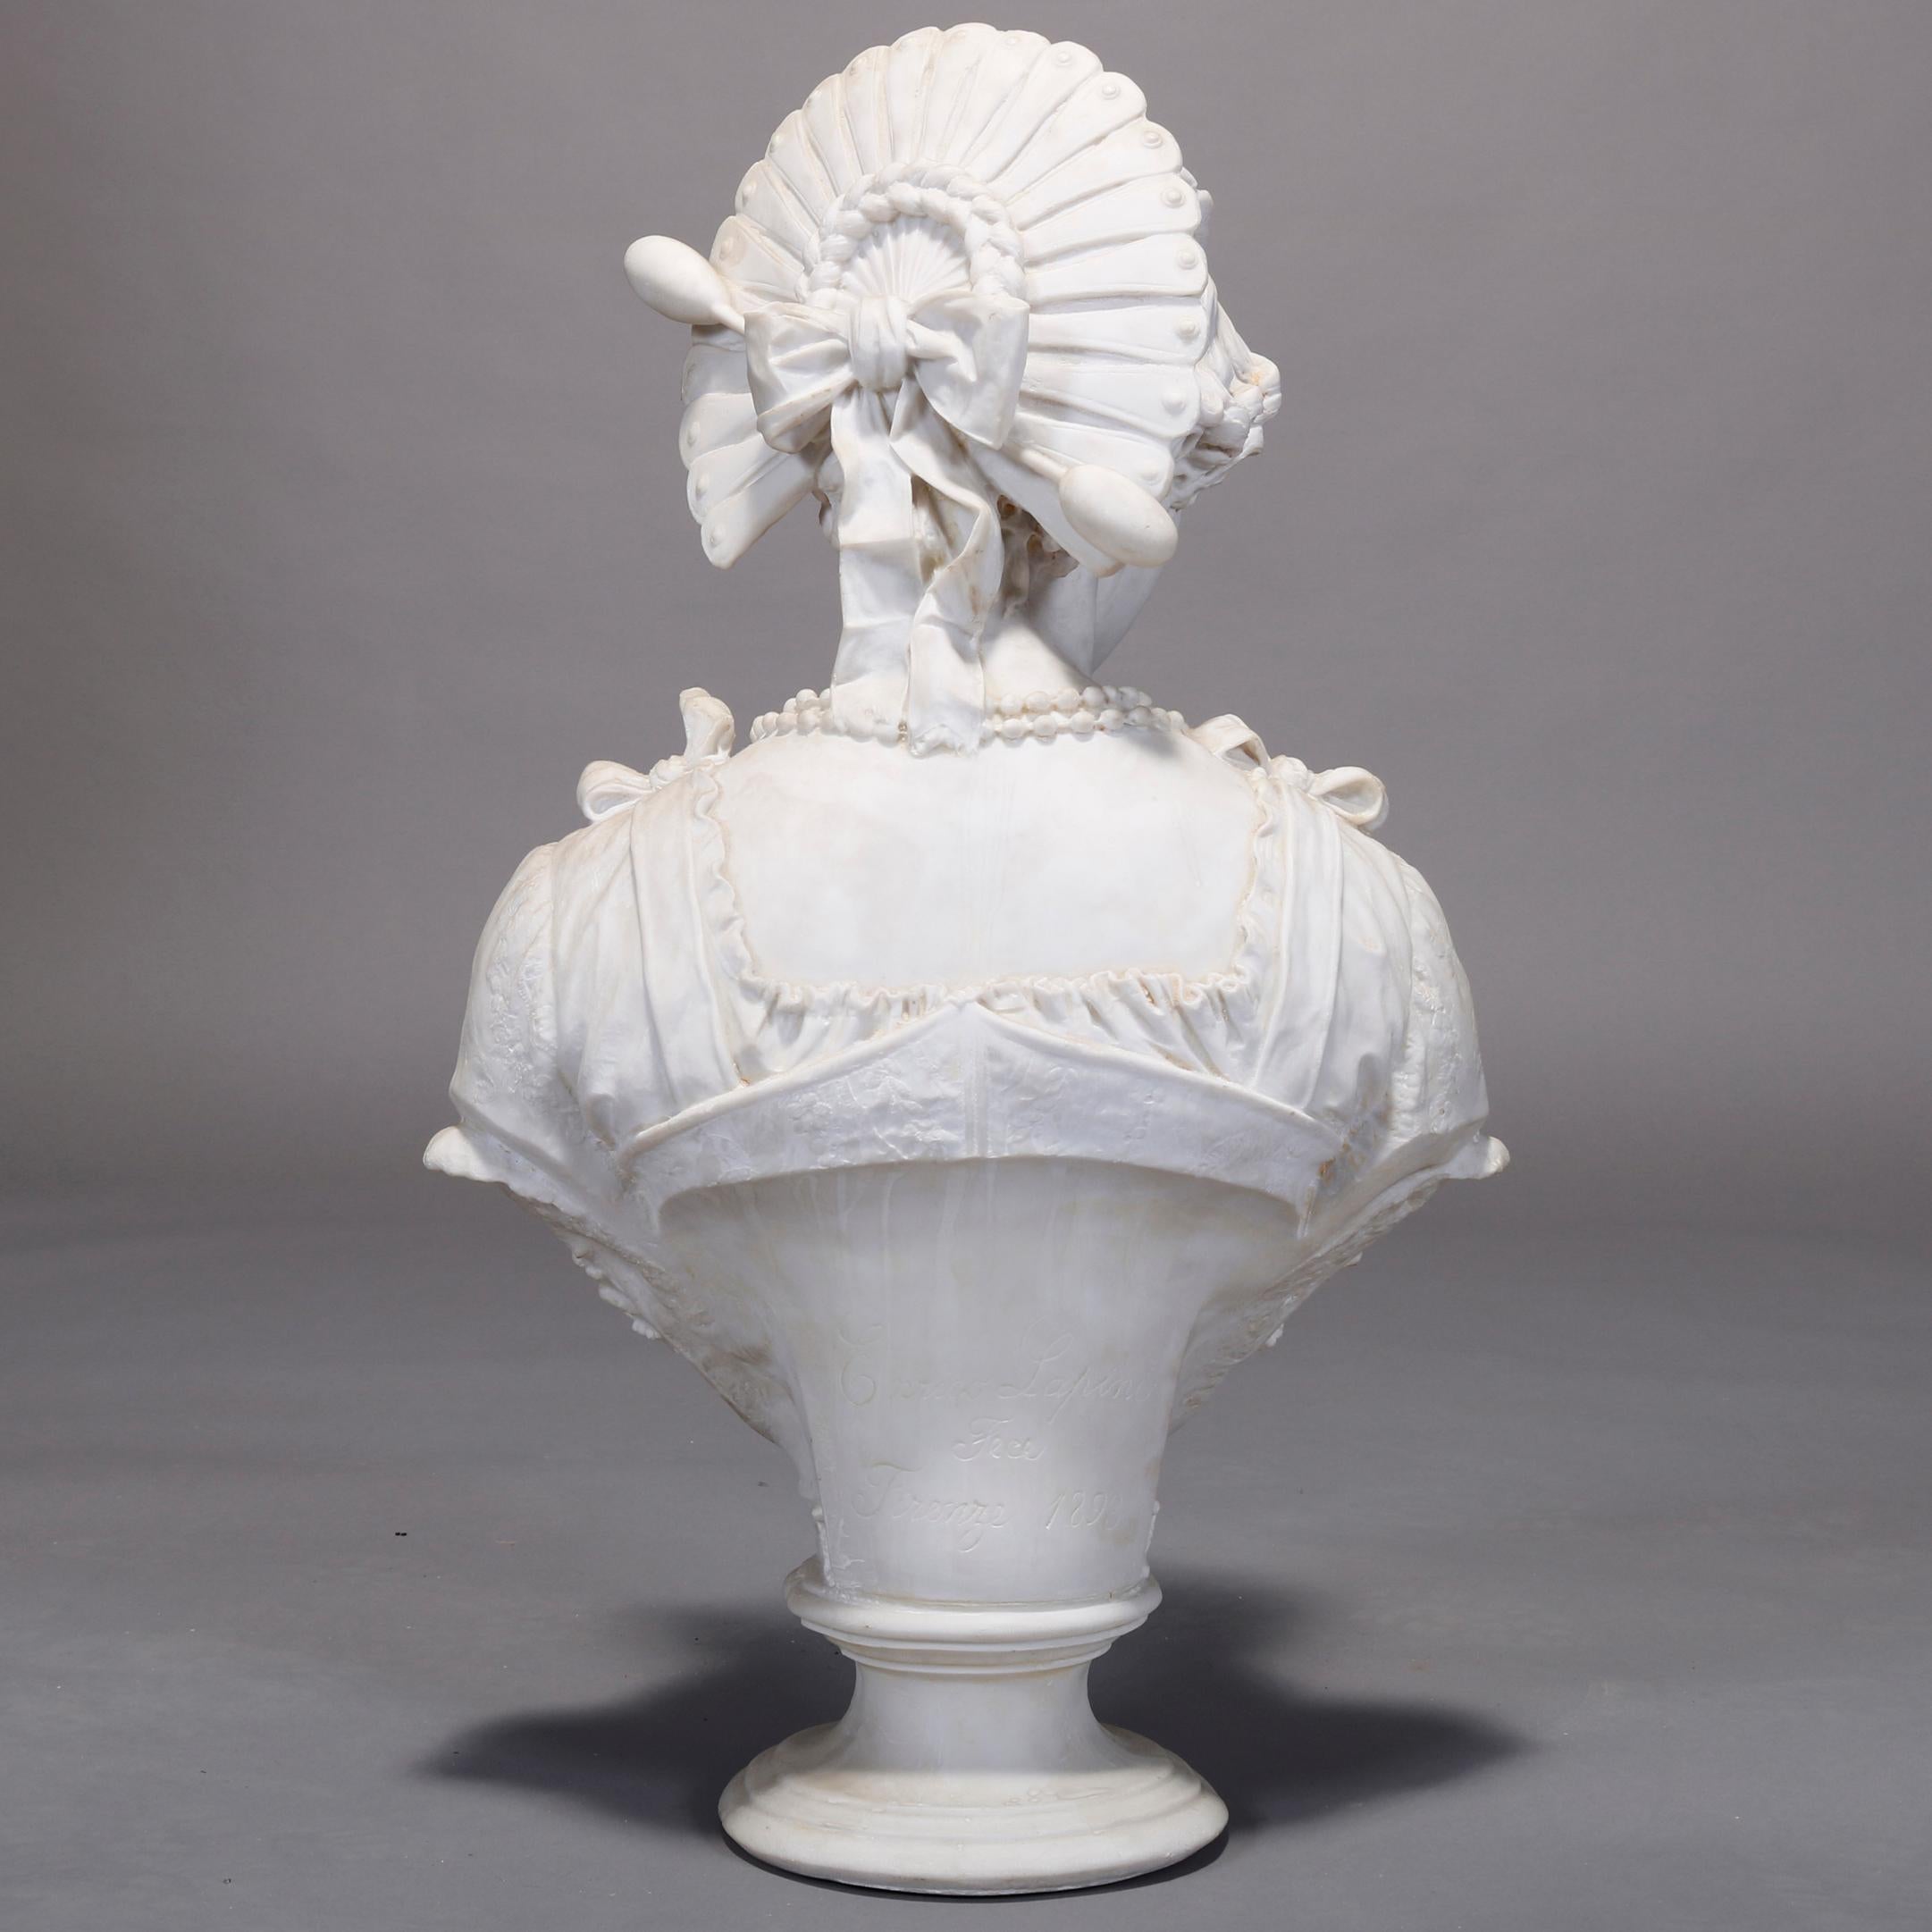 Porcelain Antique Monumental Parian Enrico Lapini Bust Sculpture of Lucia Mondella, c 1893